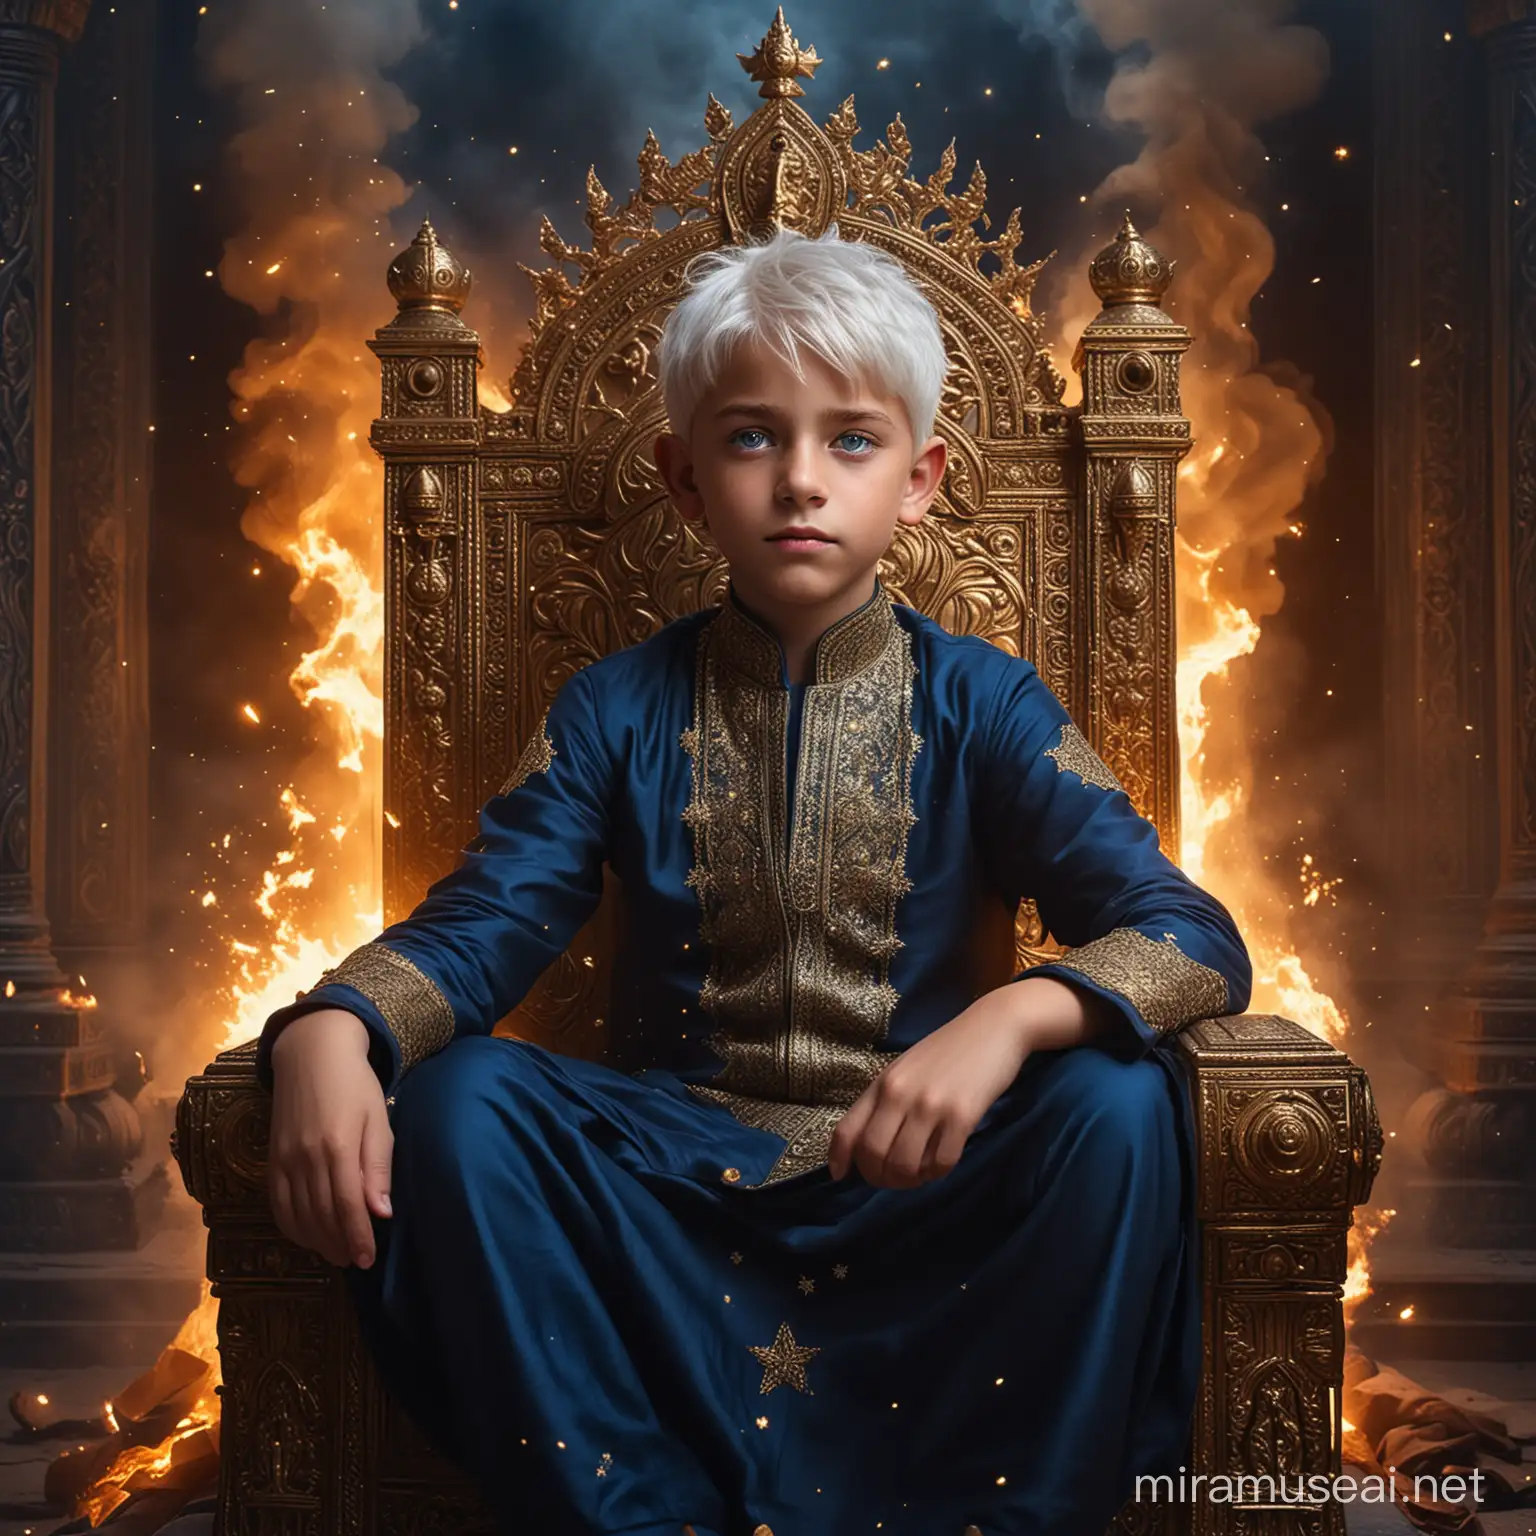 Schöner junger Junge mit weißen Haaren und blauen Augen, gekleidet in dunkelblau mit goldenen sternen, sitzend auf einem majestätischen Thron, umgeben von Feuer und Macht, umgeben von voller Macht und Feuer und im Hintergrund ein riesiger dunkler Hindu Palast